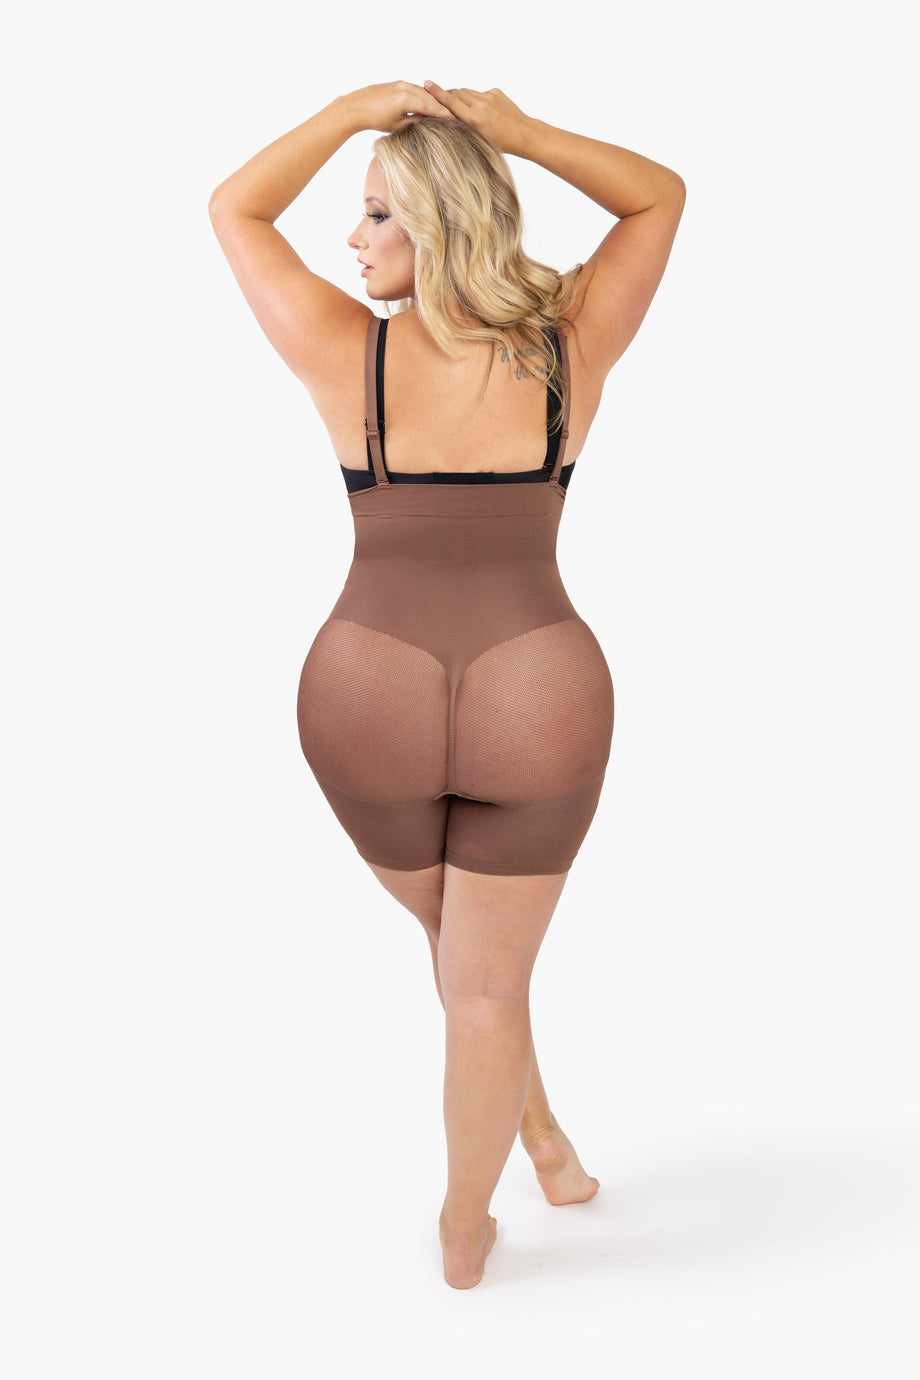 Lovskoo Bodysuit for Women Tummy Control Shapewear Open Bust Butt Lifter  Thigh Slimmer Body Shaper Slimming Girdles Beige